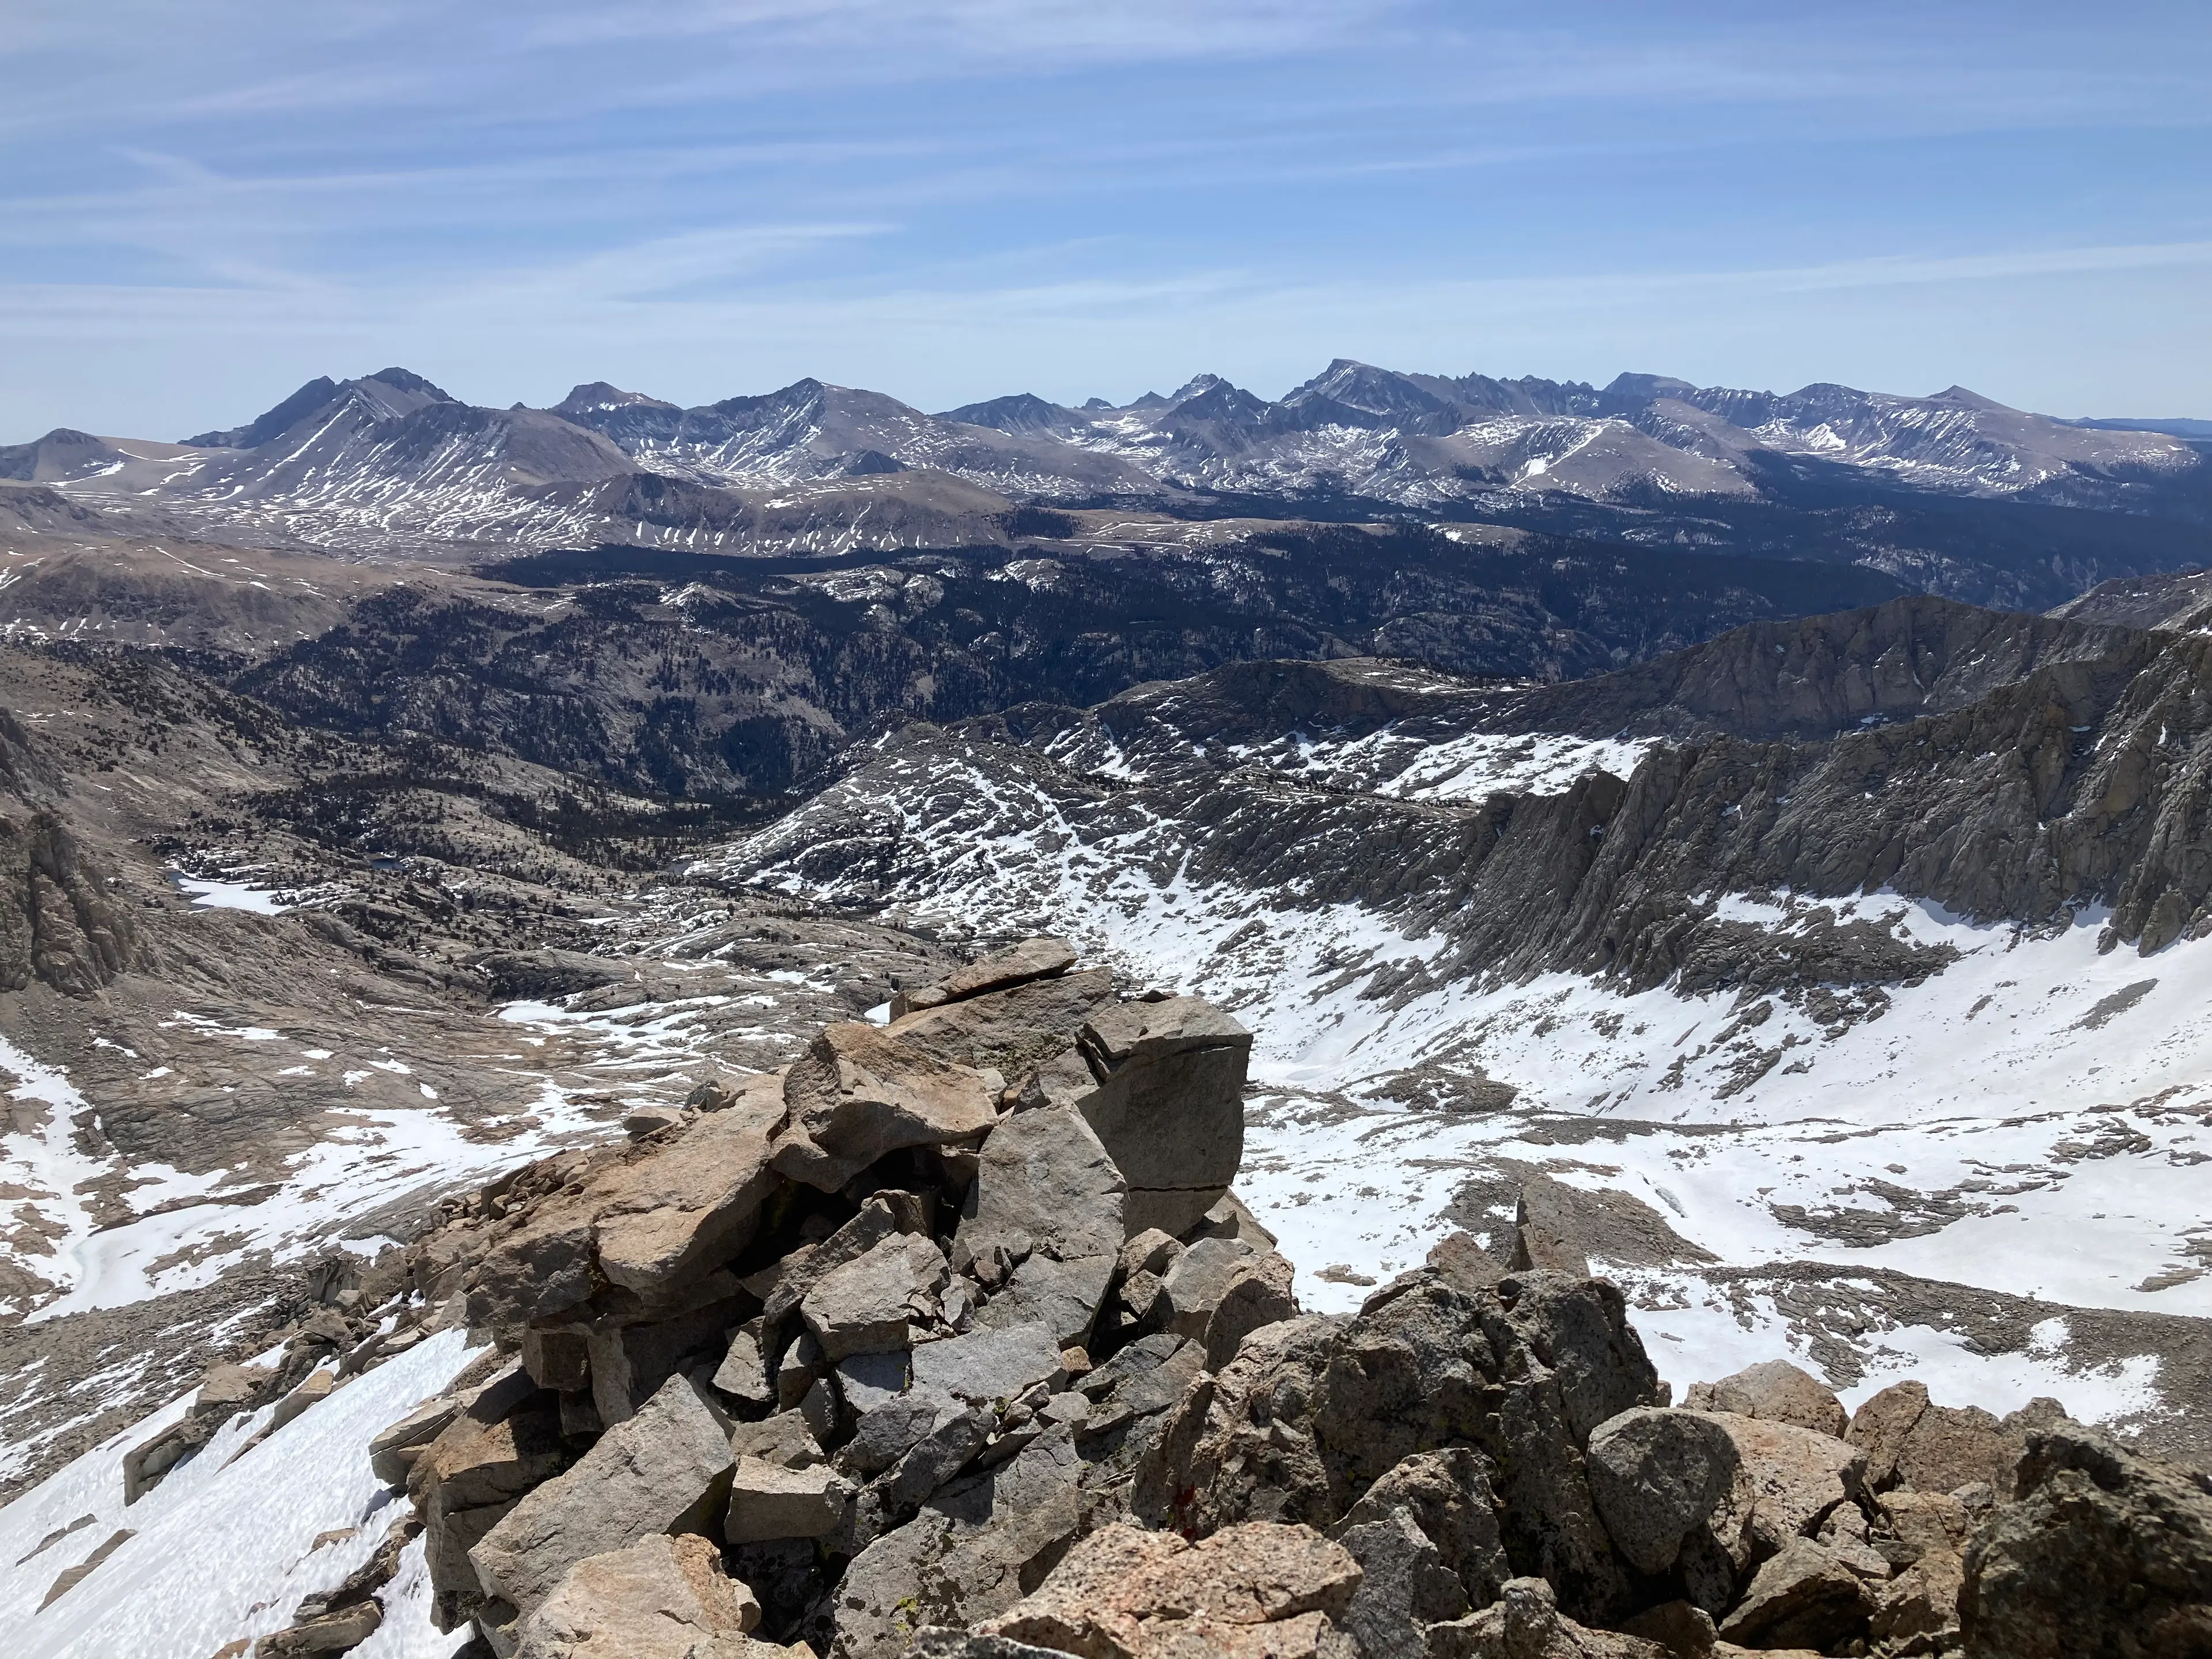 Sierra Crest from Shepherd Pass (L) to Joe Devel Peak (R)